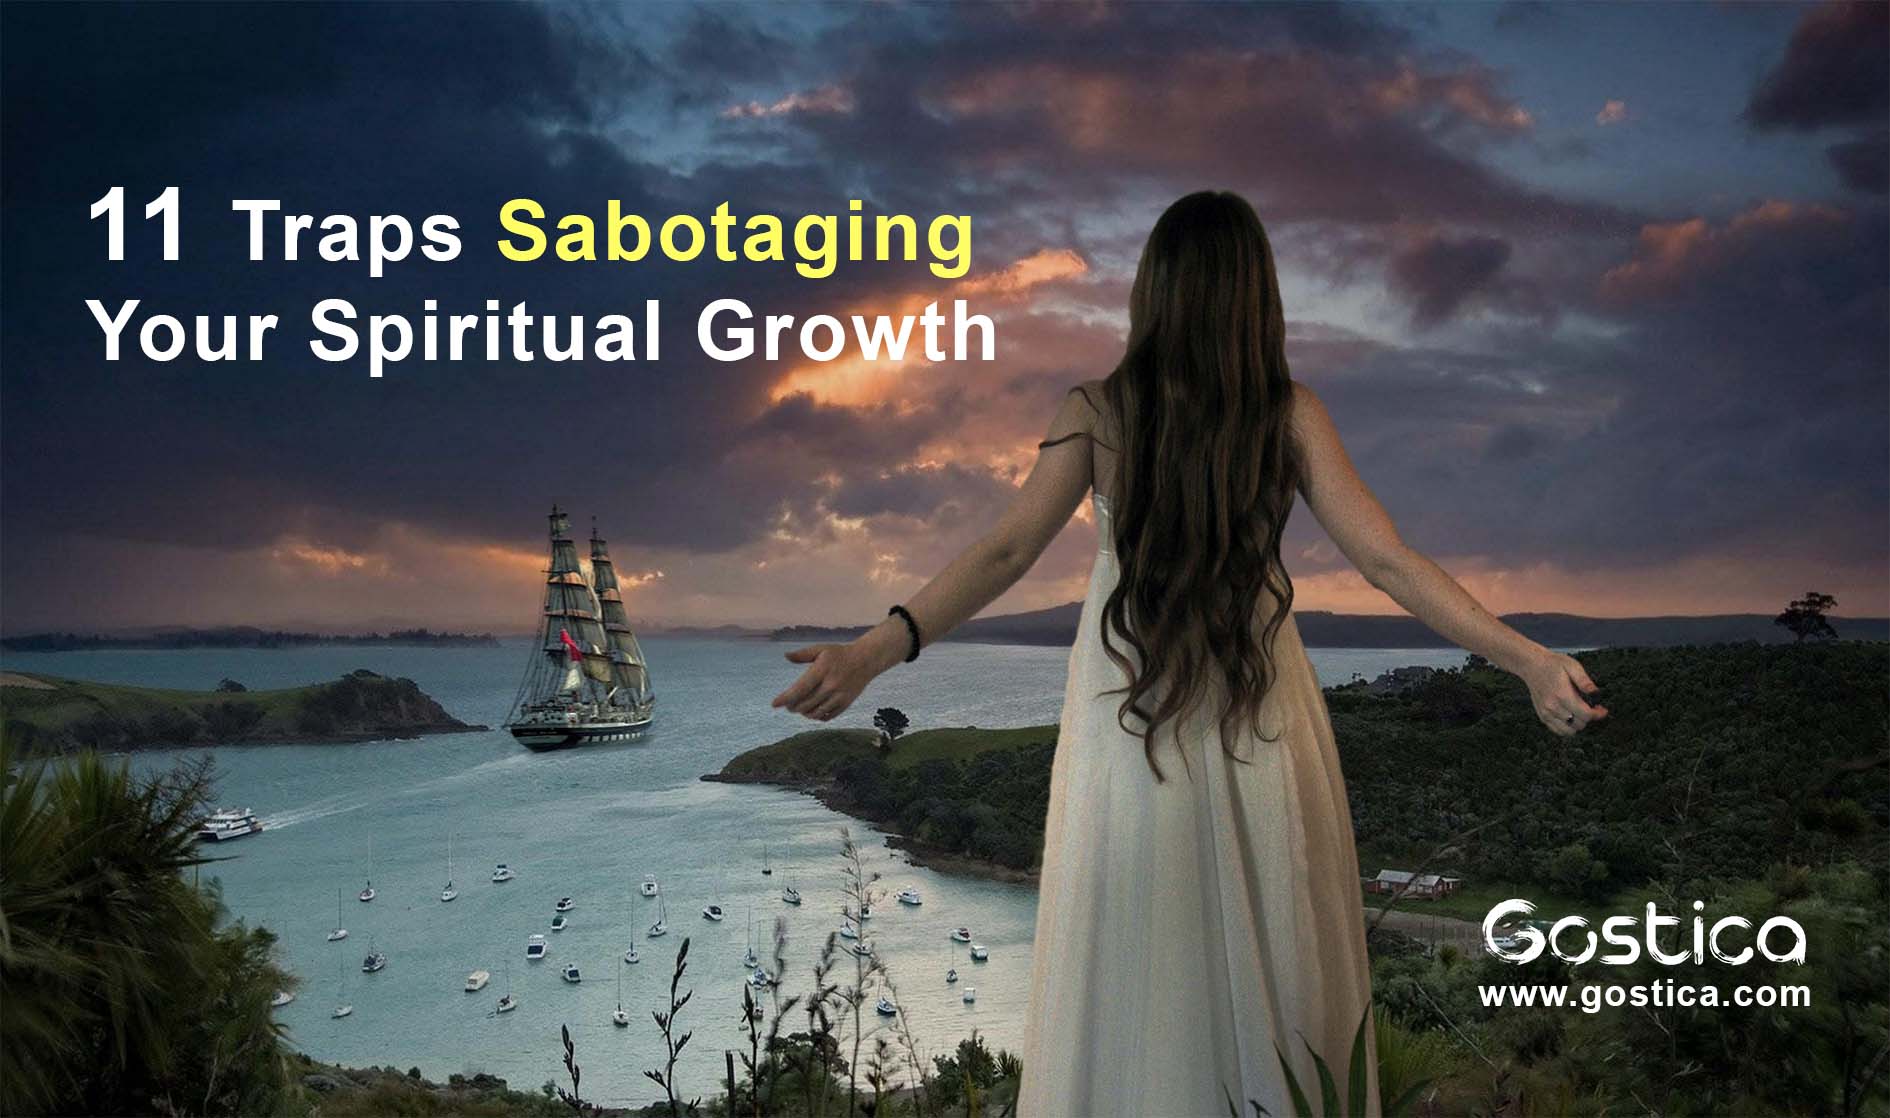 11-Traps-Sabotaging-Your-Spiritual-Growth.jpg